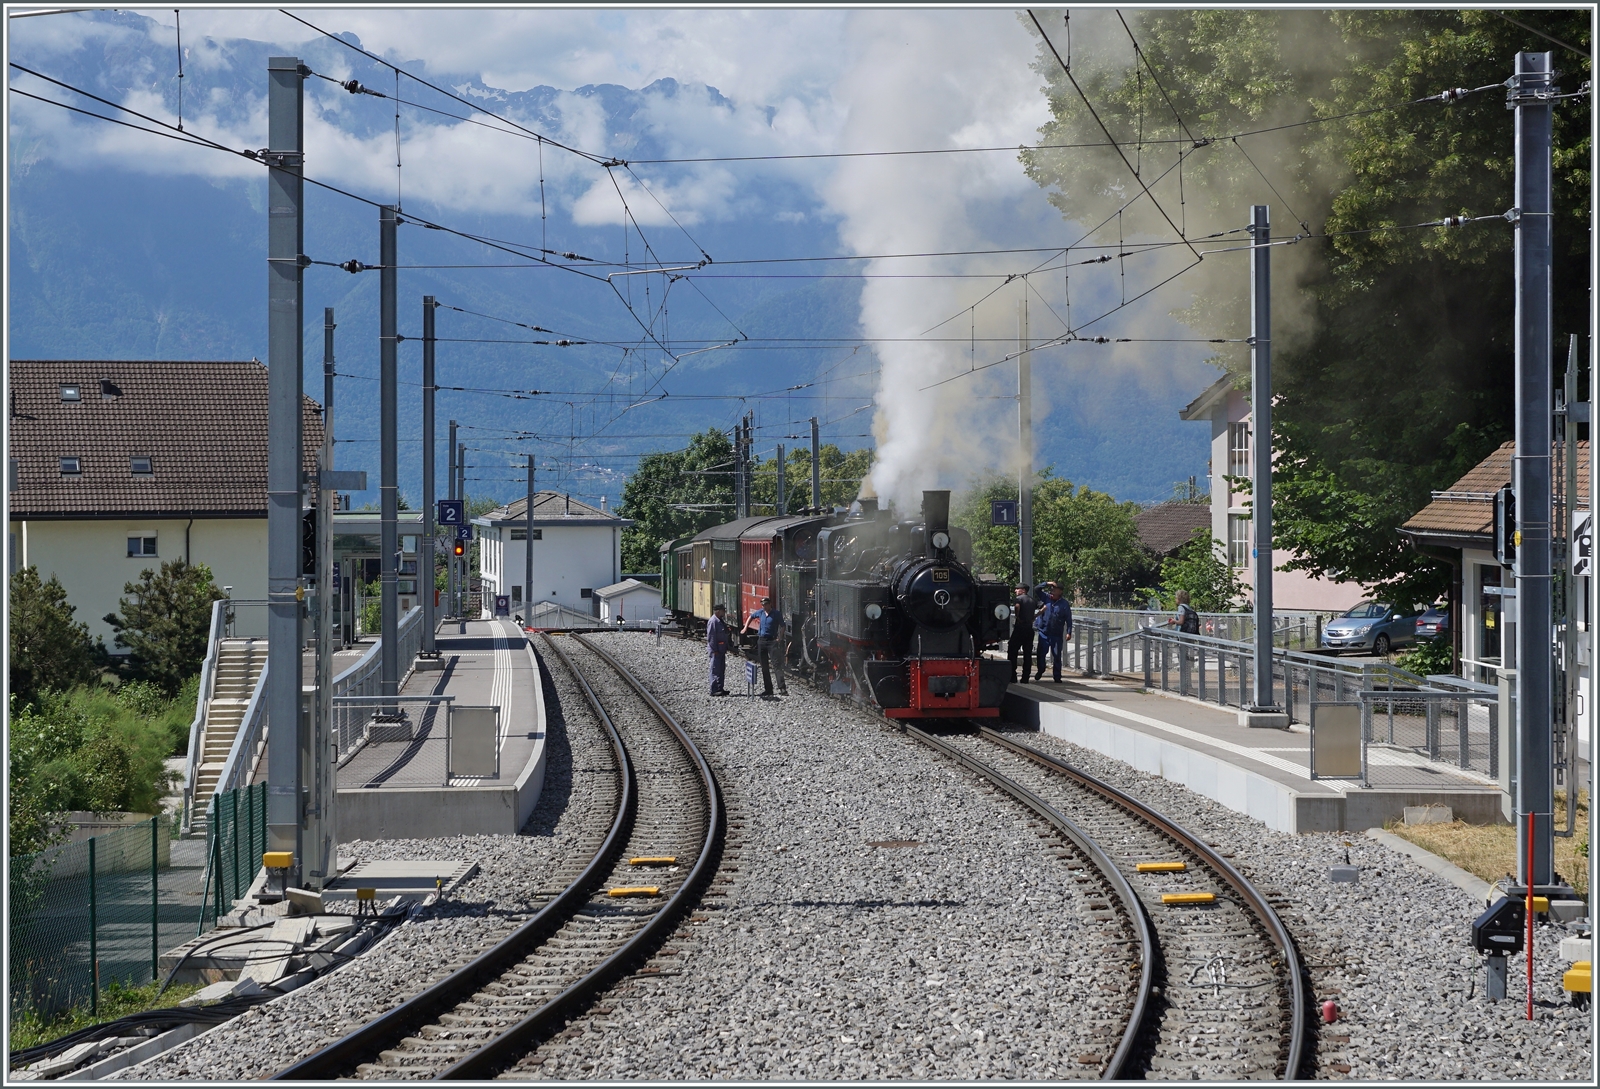 Der Blonay-Chamby Extrazug von Vevey nach Chaulin wartet in St-Légier Gare auf den Gegenzug. so dass die Lokmannschaft und die beide Dampfloks G 2x 2/2 105 und HG 3/4 N° 3 etwas verschnaufen können. 

6. Juni 2022